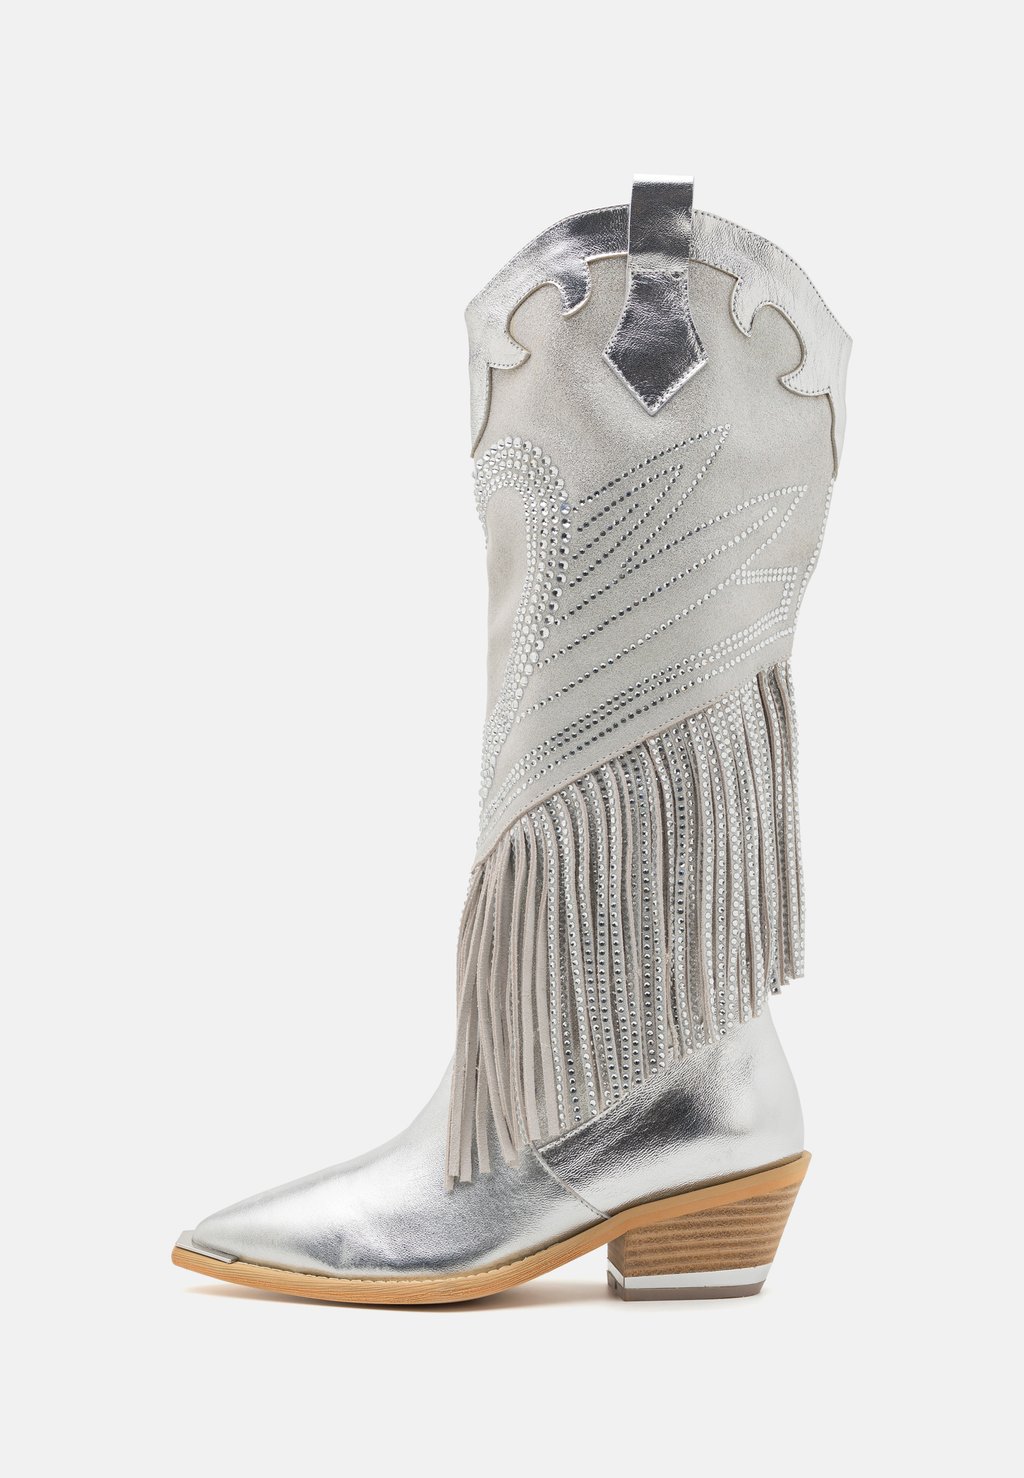 Техасские/байкерские ботинки Alma en Pena, серебро техасские байкерские ботинки alma en pena серебро